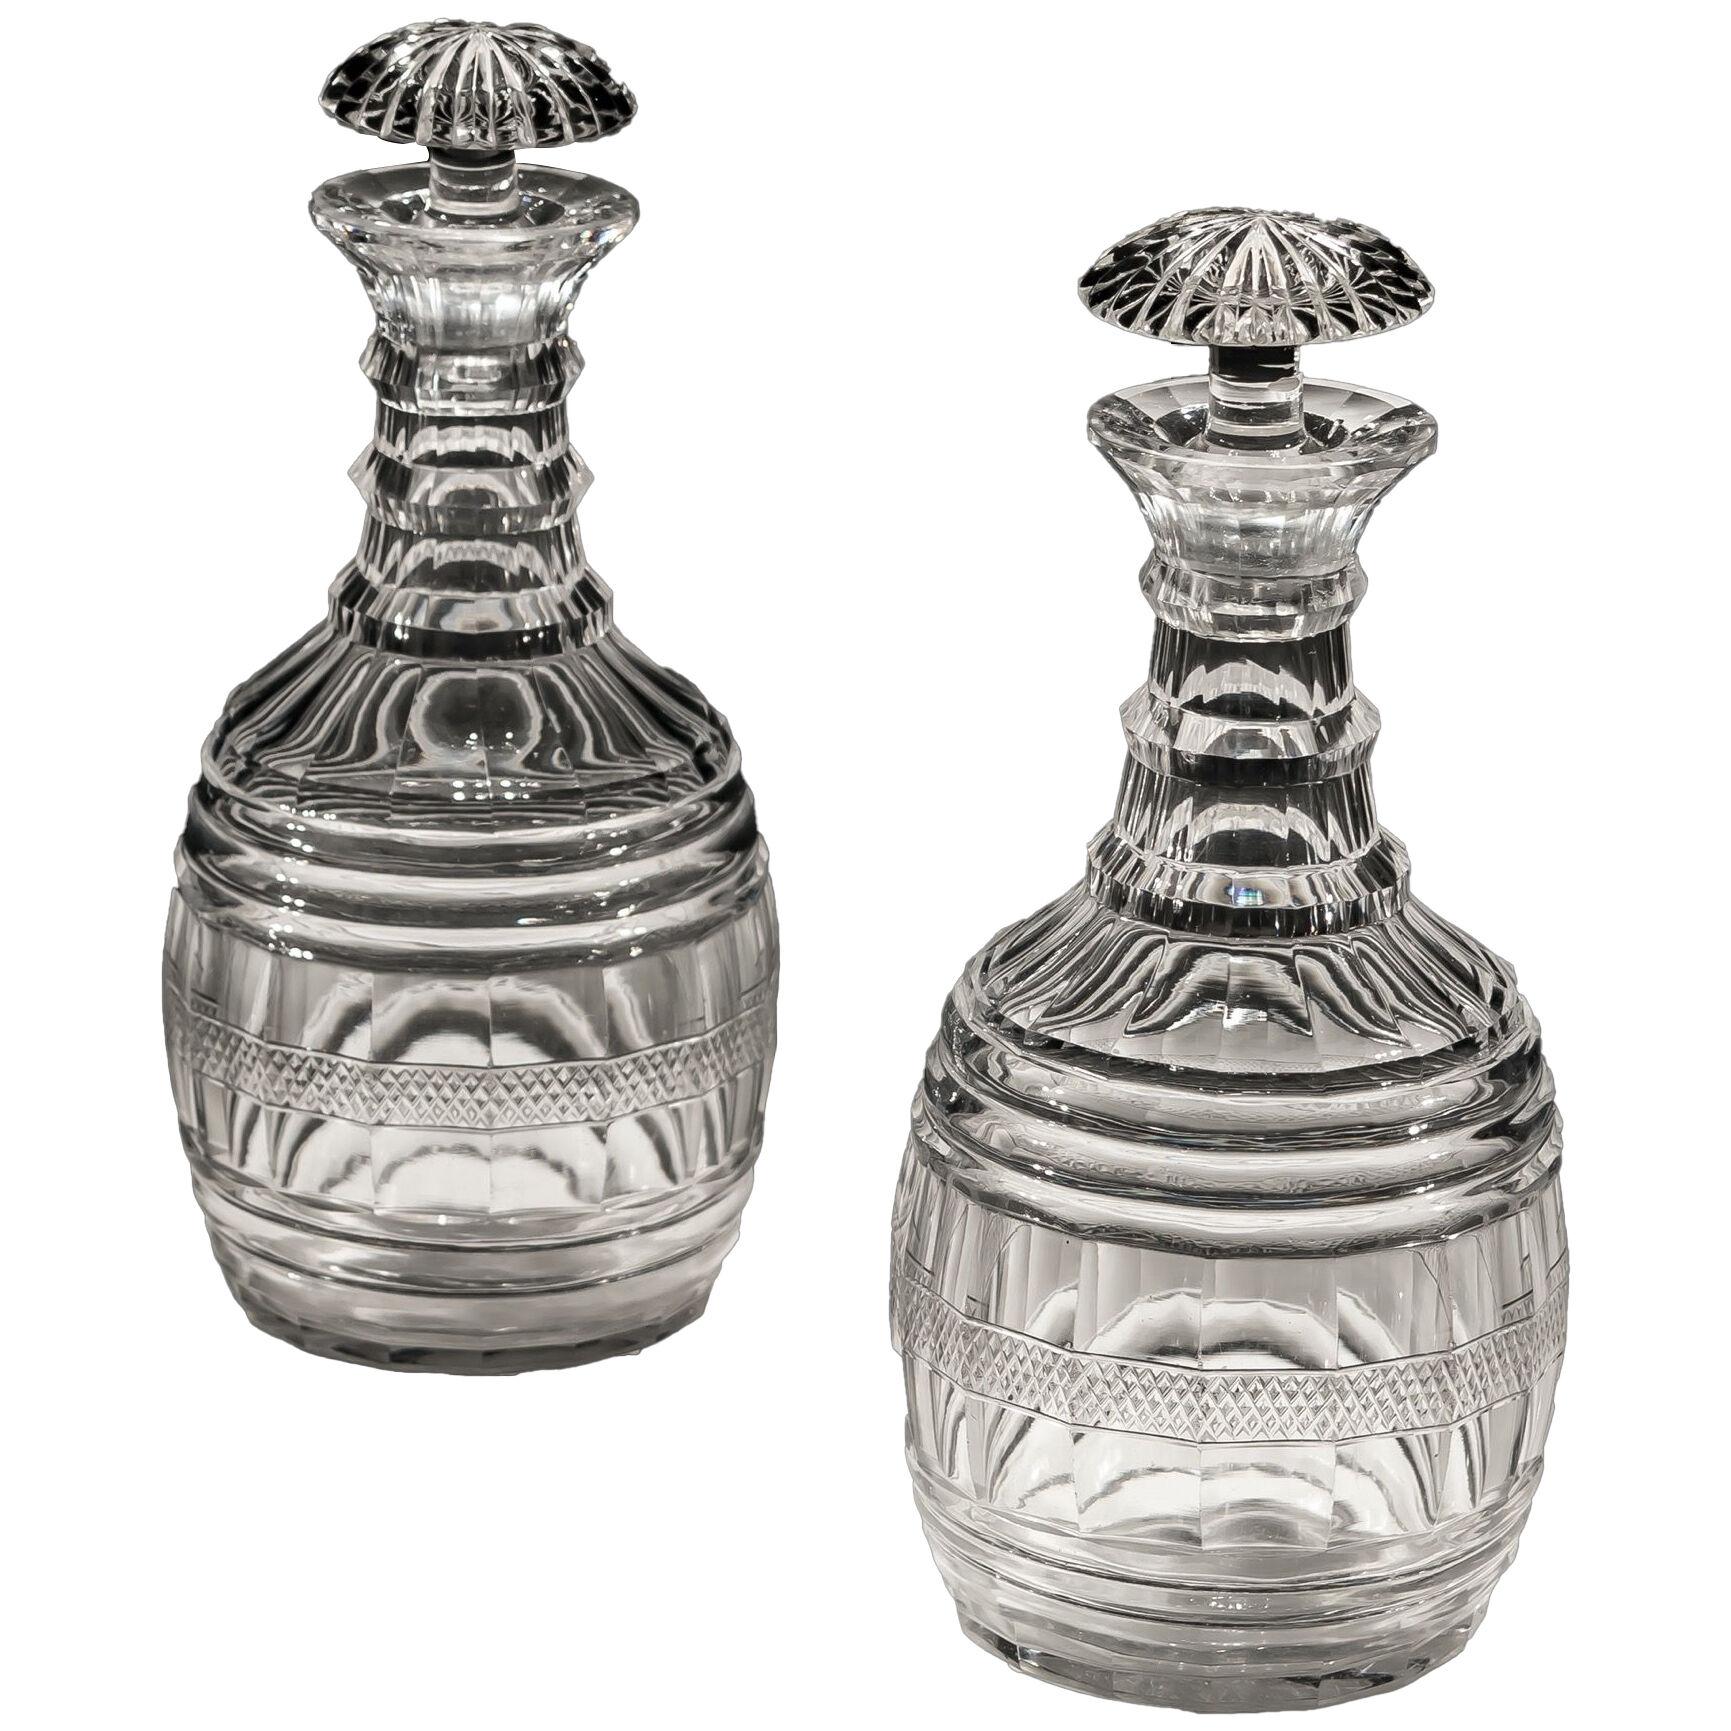 A Pair of Regency Cut Glass Barrel Decanters